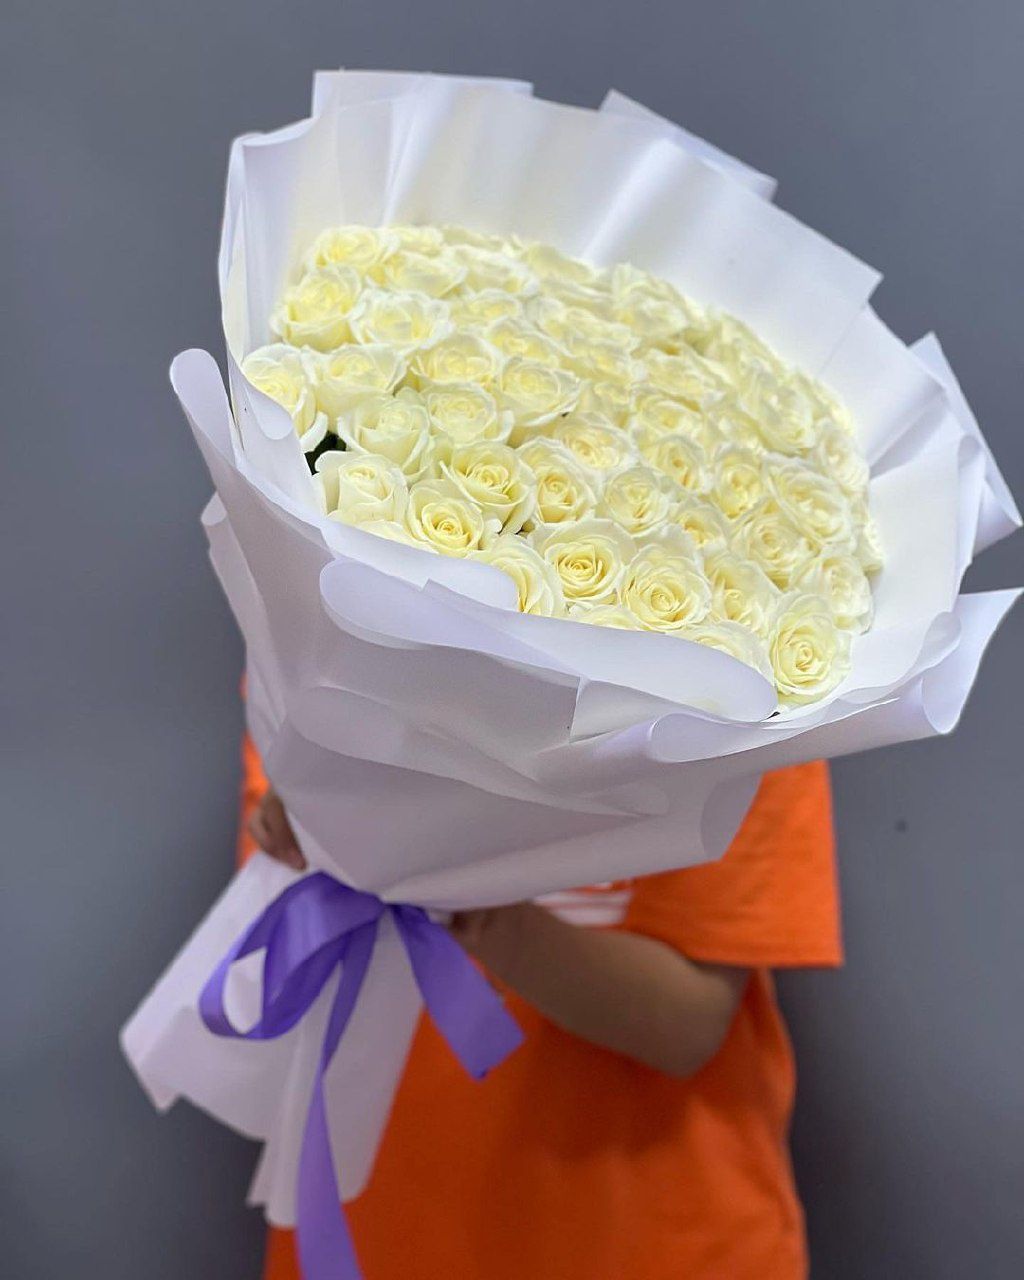 Бесплатная доставка Цветы Усть Каменогорск , роза букеты торты